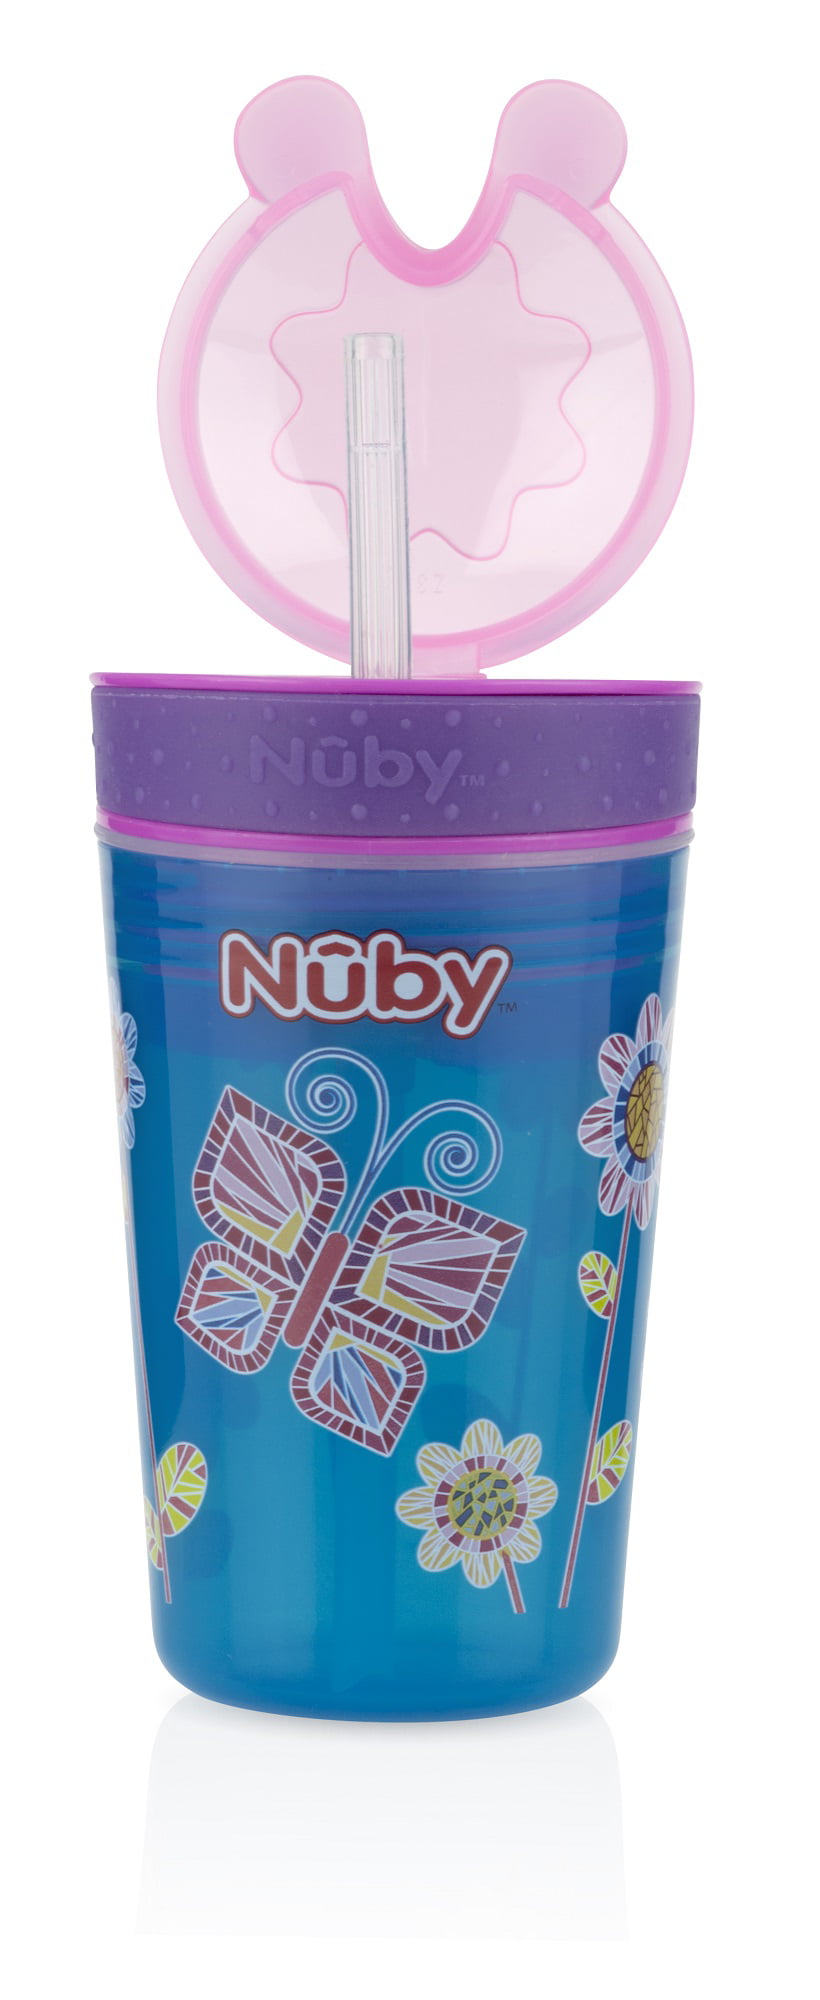 Nuby Snack N' Sip 2 in 1 Snack and Drink Cup, 2 Pack, Pink/Purple –